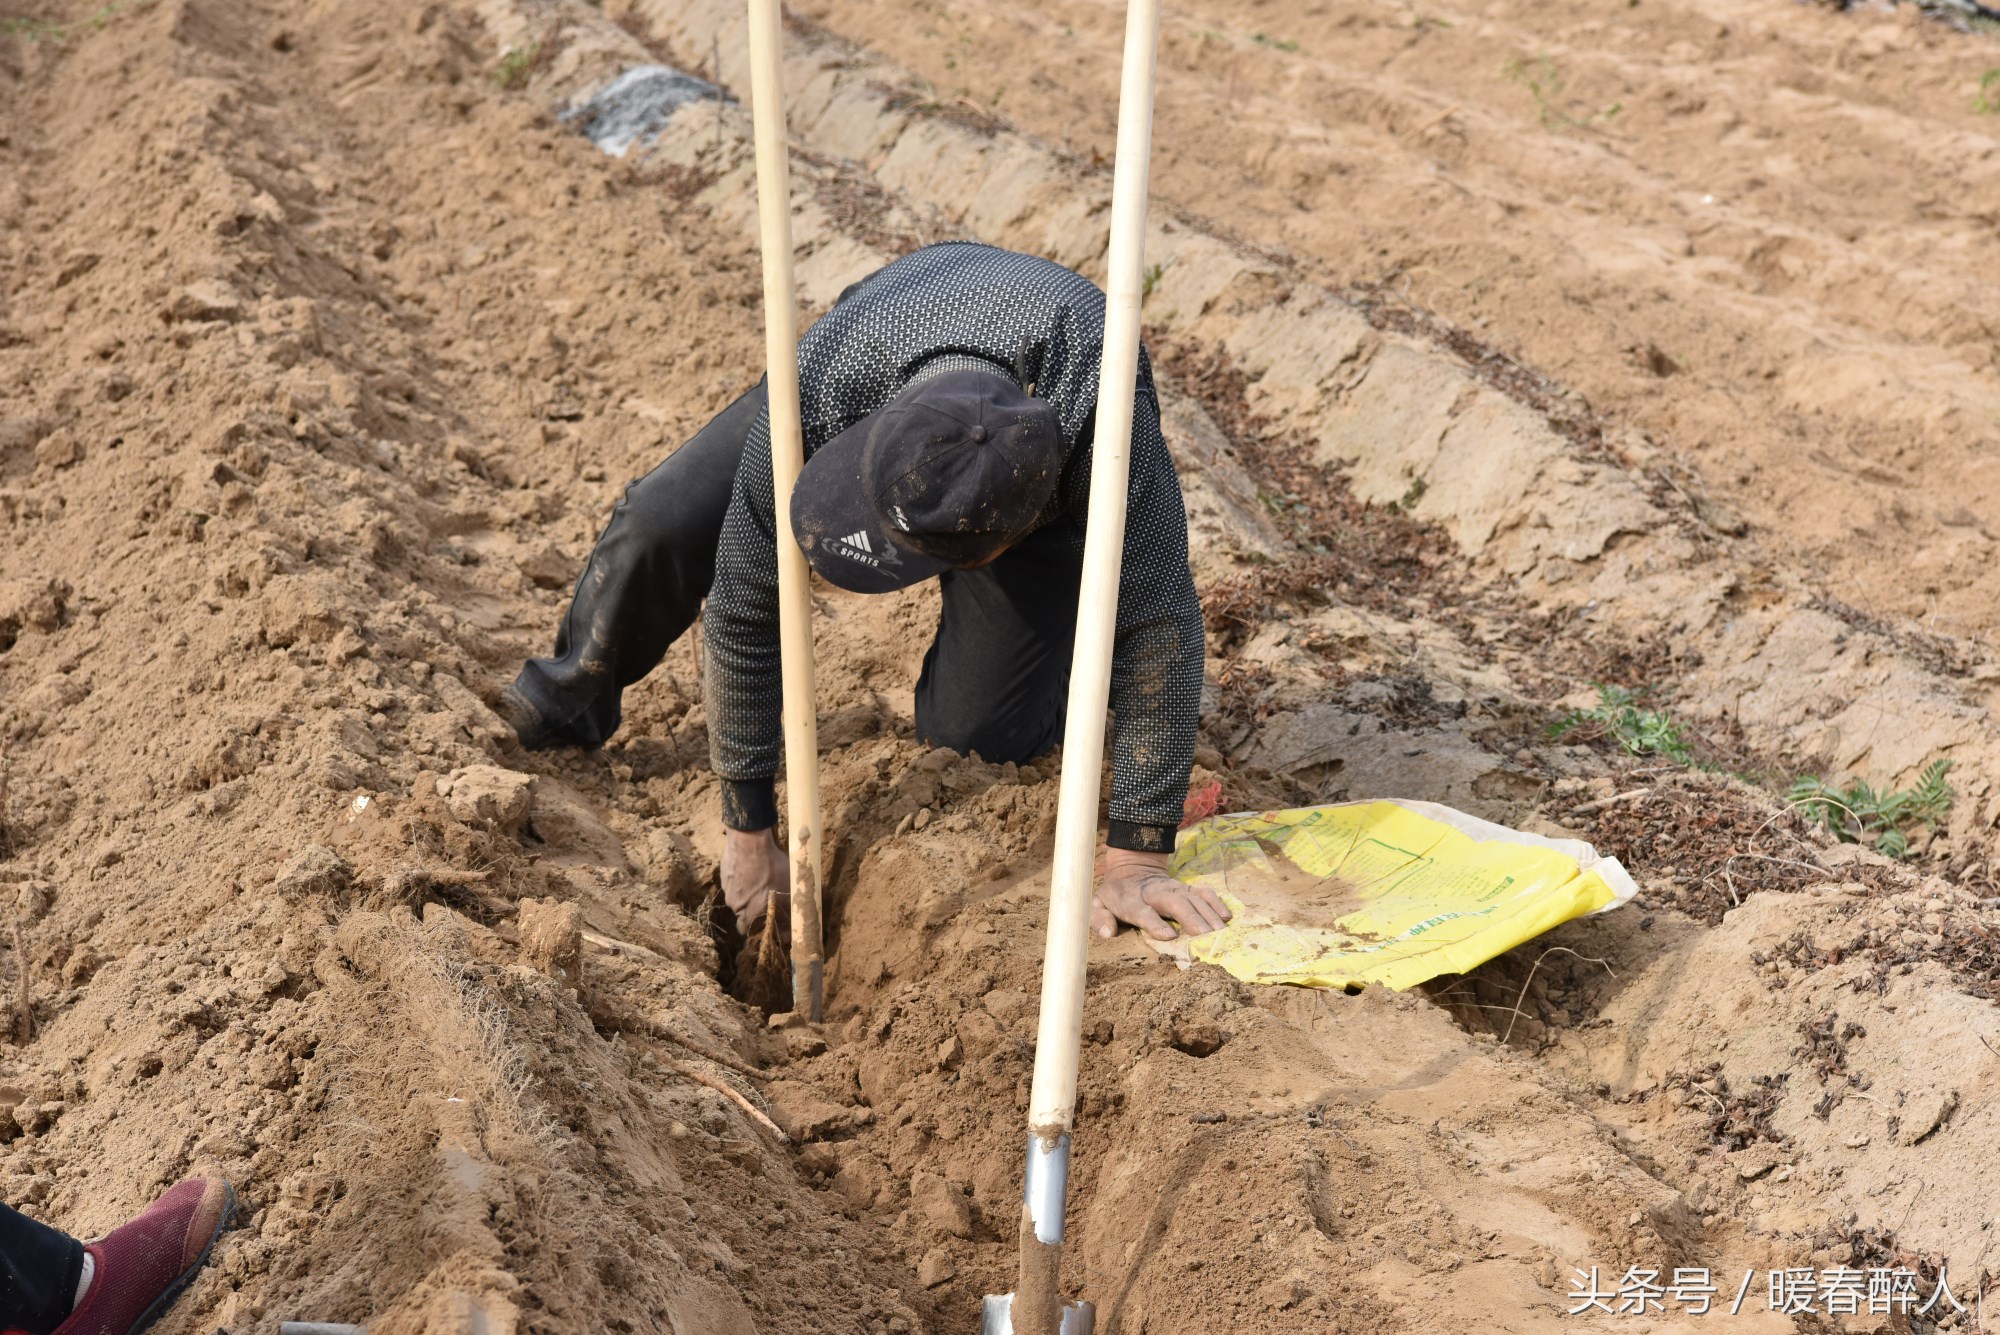 挖山药人:在沙土地里用屁股走300米,弯腰1500余次